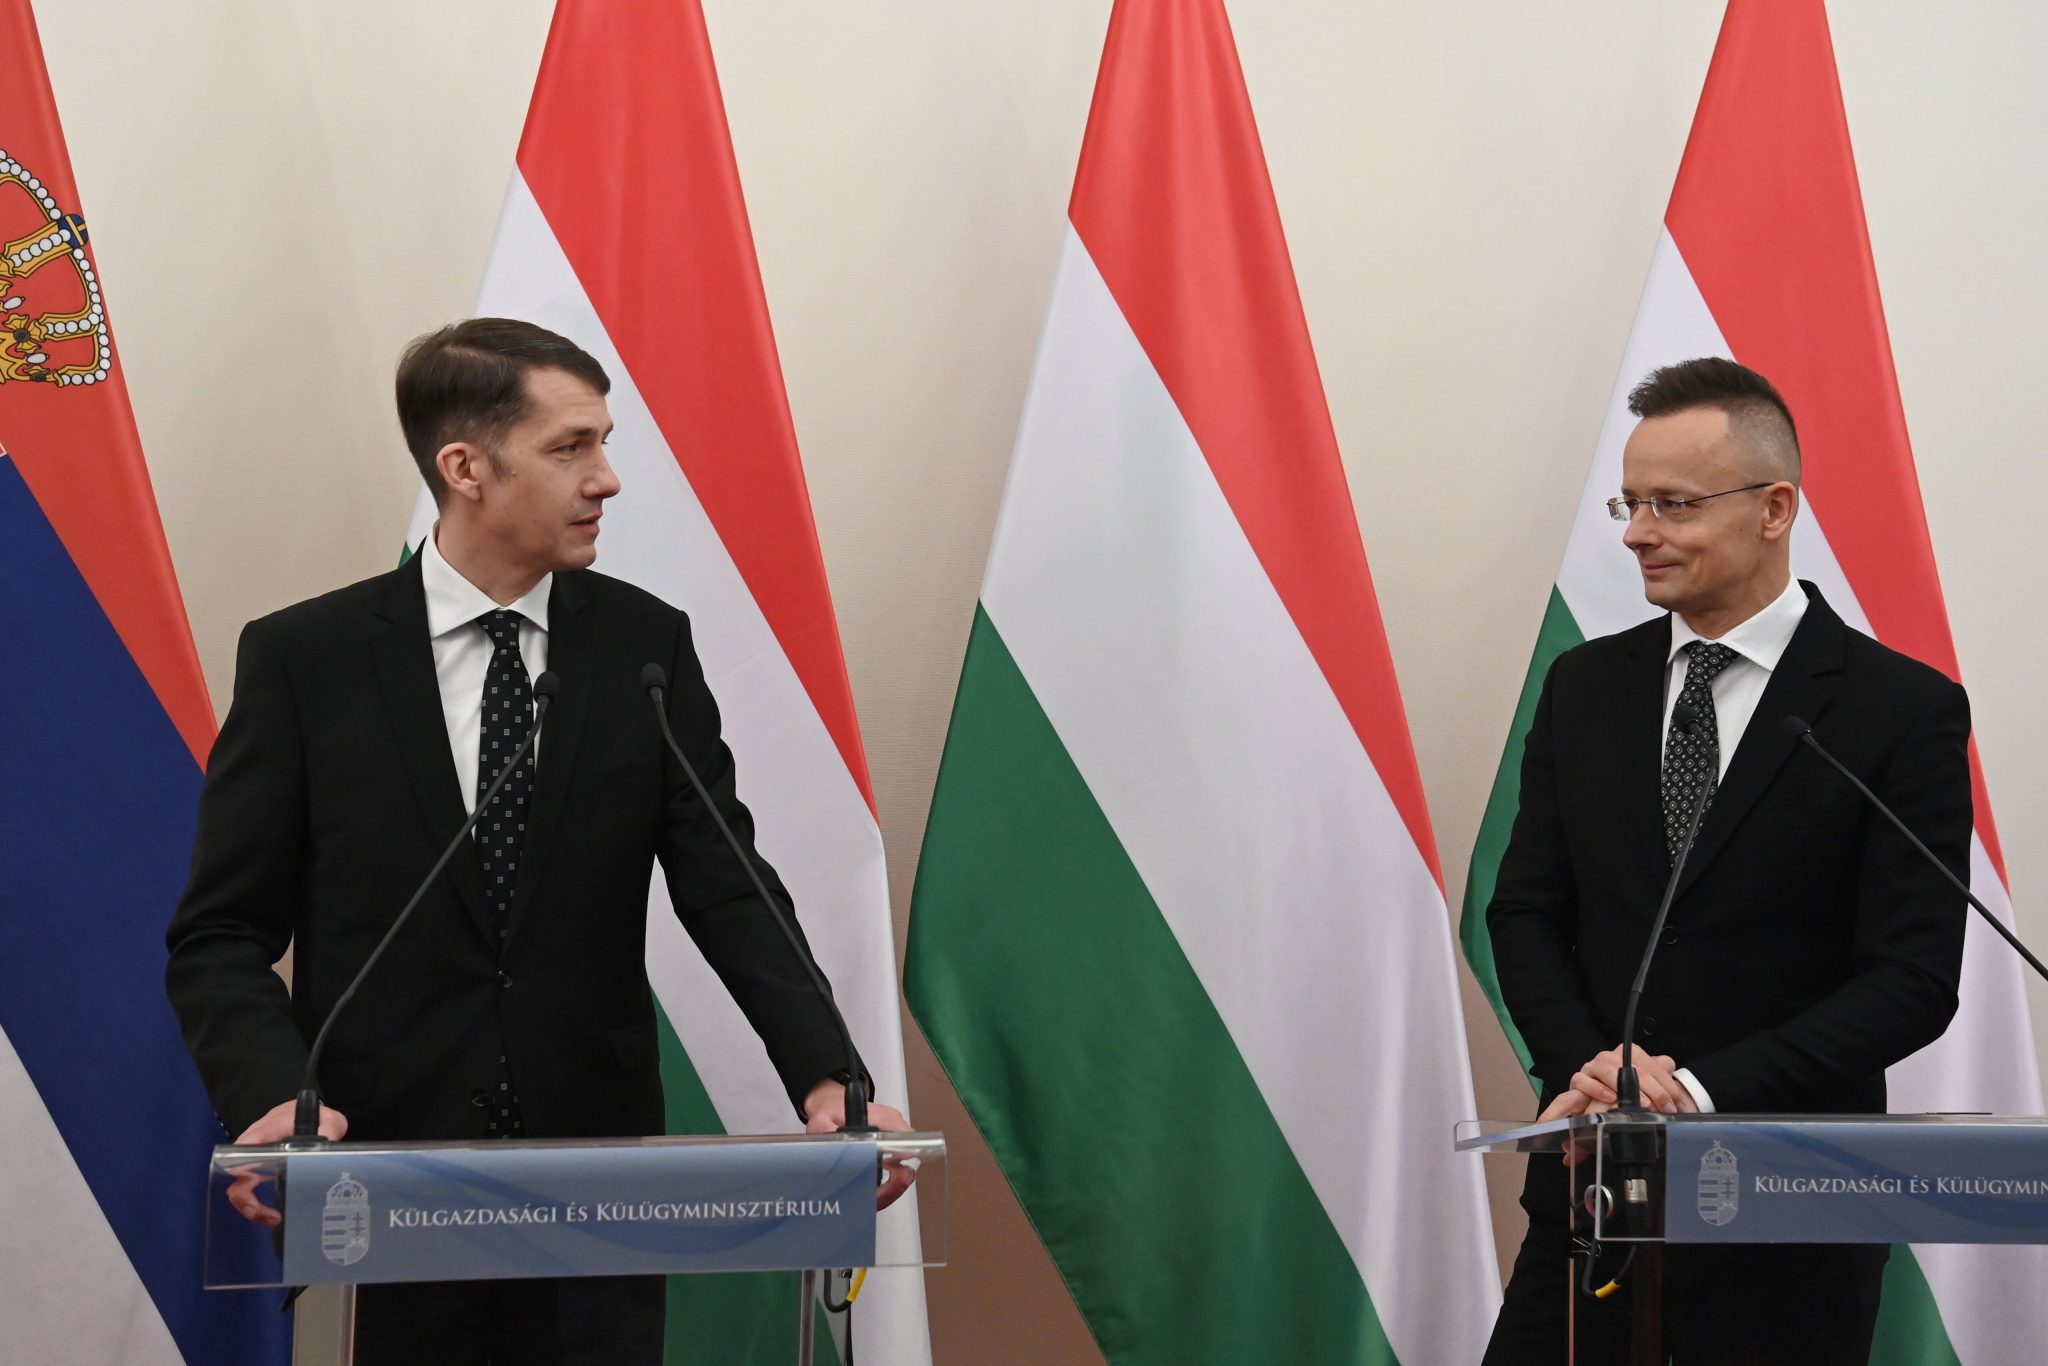 Government Ready to Continue Economic Development Program in Vojvodina